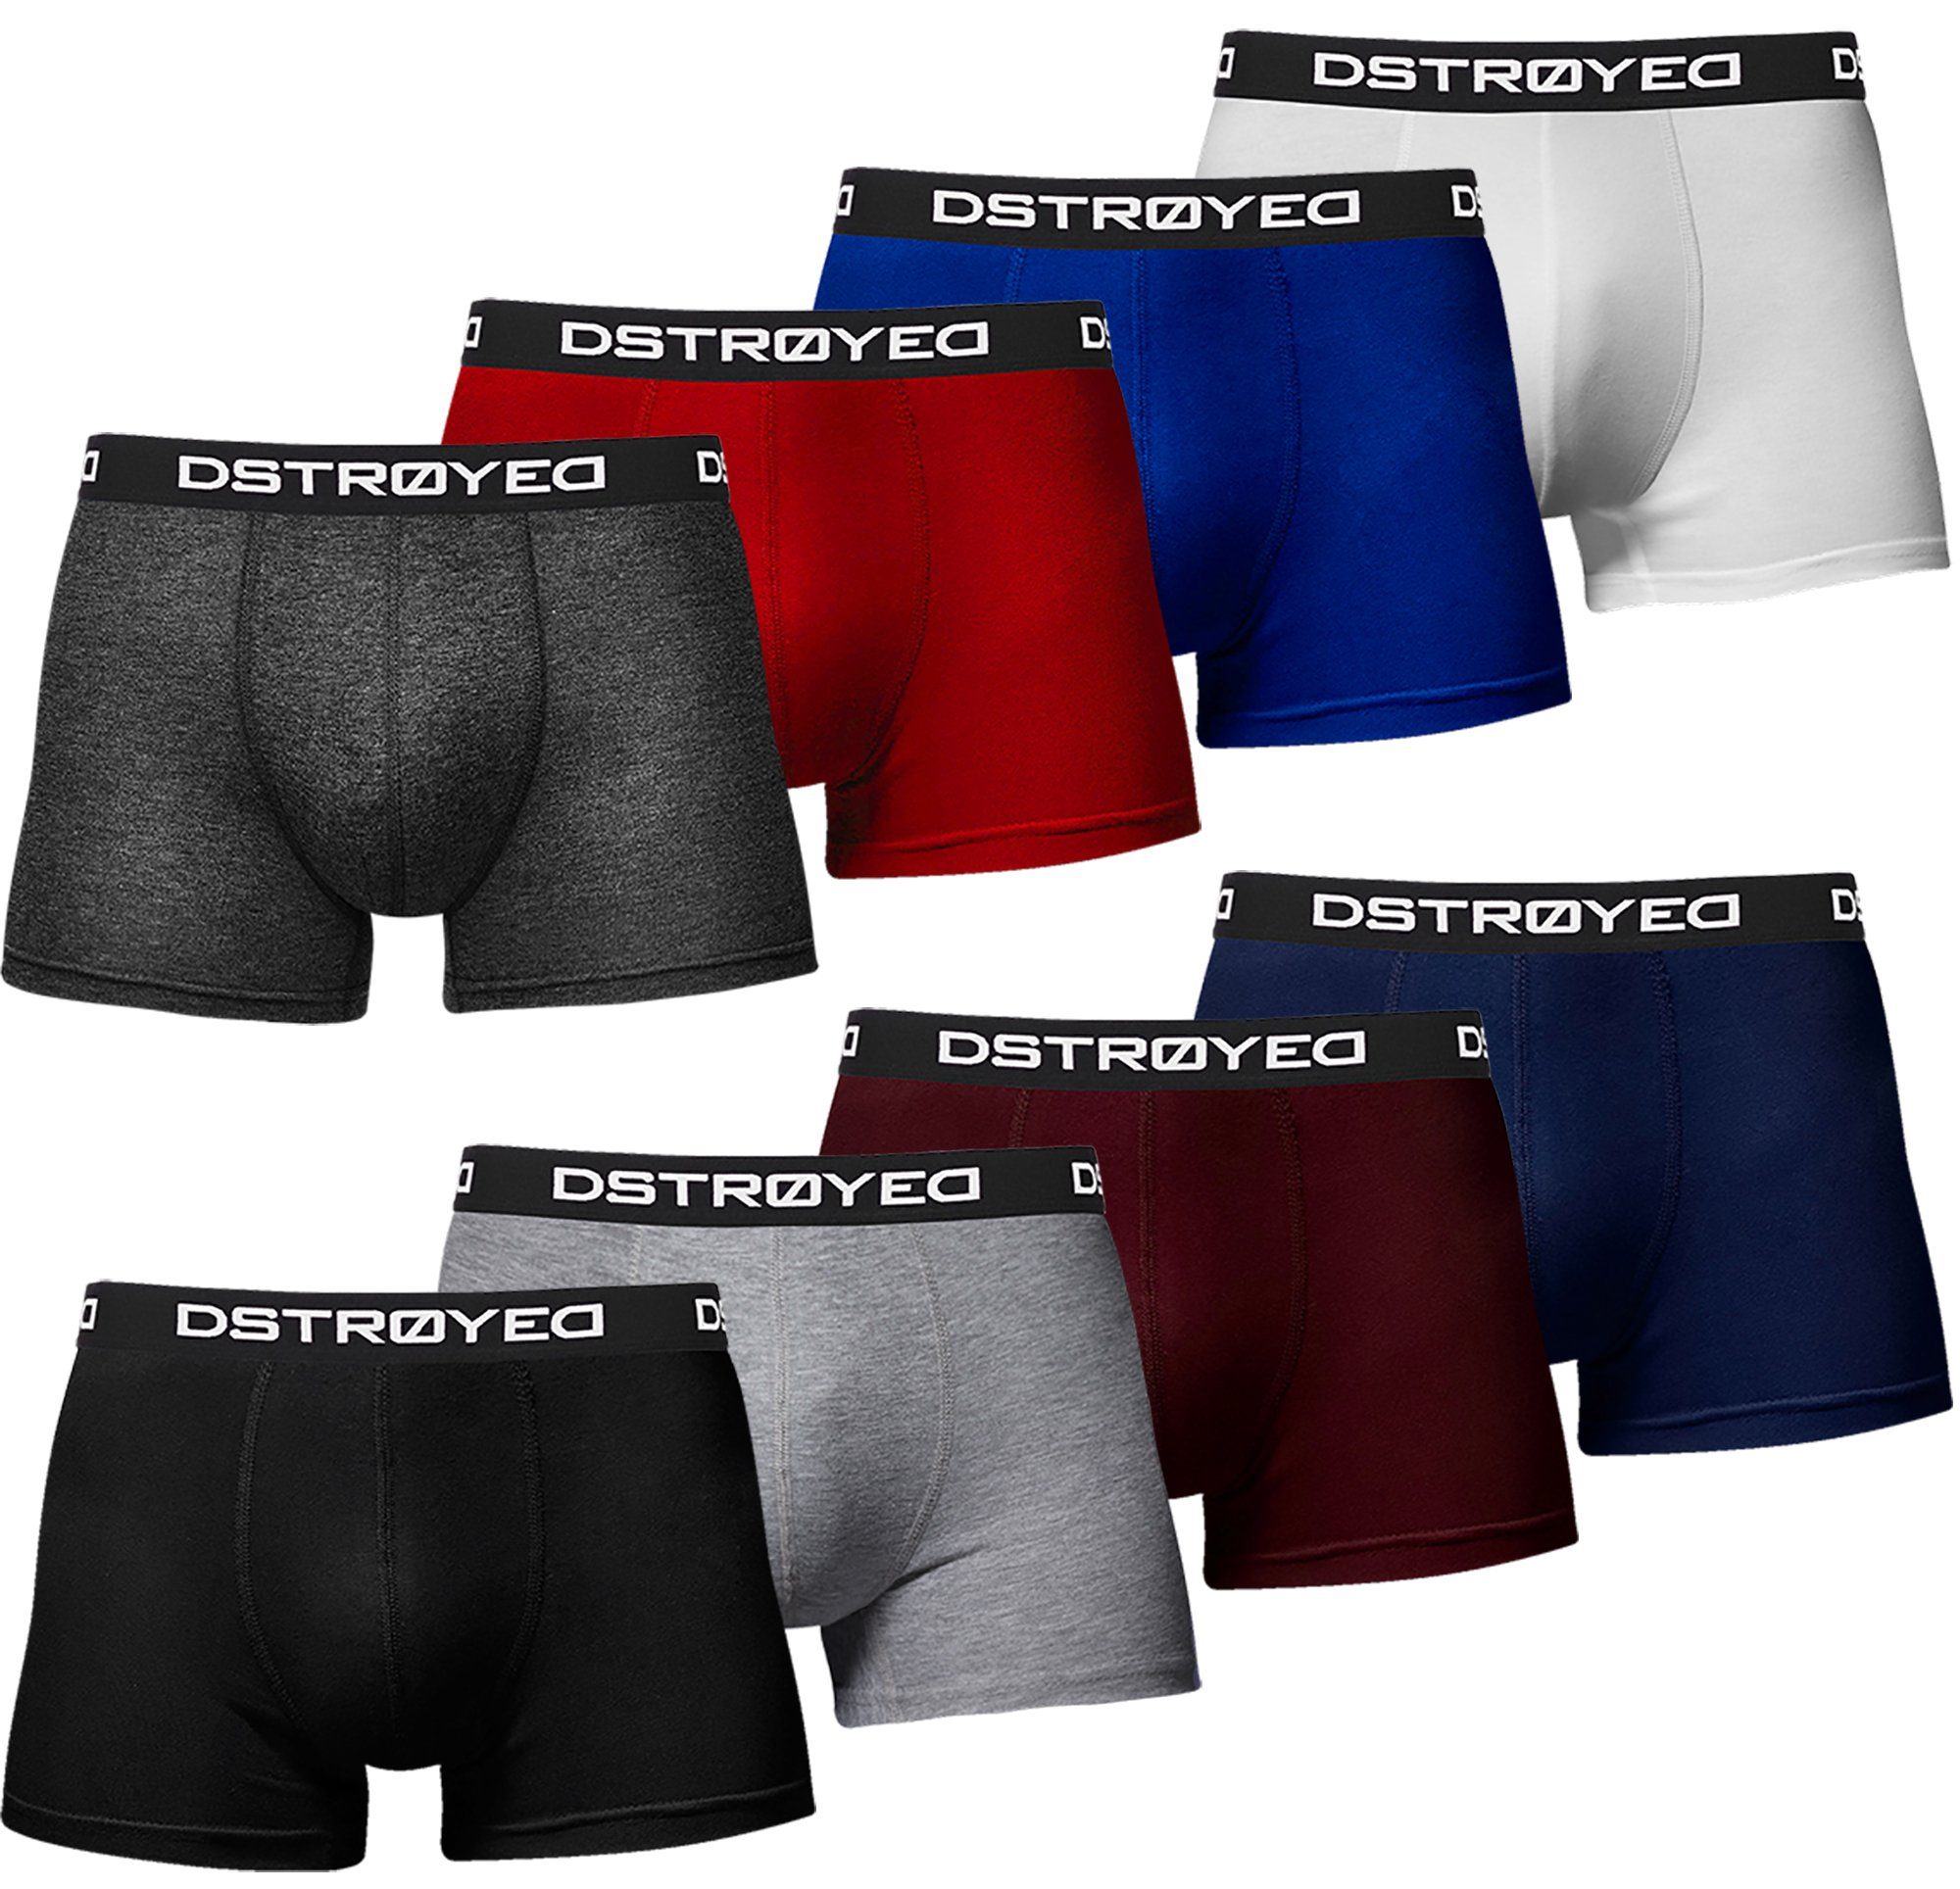 DSTROYED Boxershorts Herren Männer Unterhosen Baumwolle Premium Qualität perfekte Passform (Vorteilspack, 8er, 8er Pack) 316d-mehrfarbig